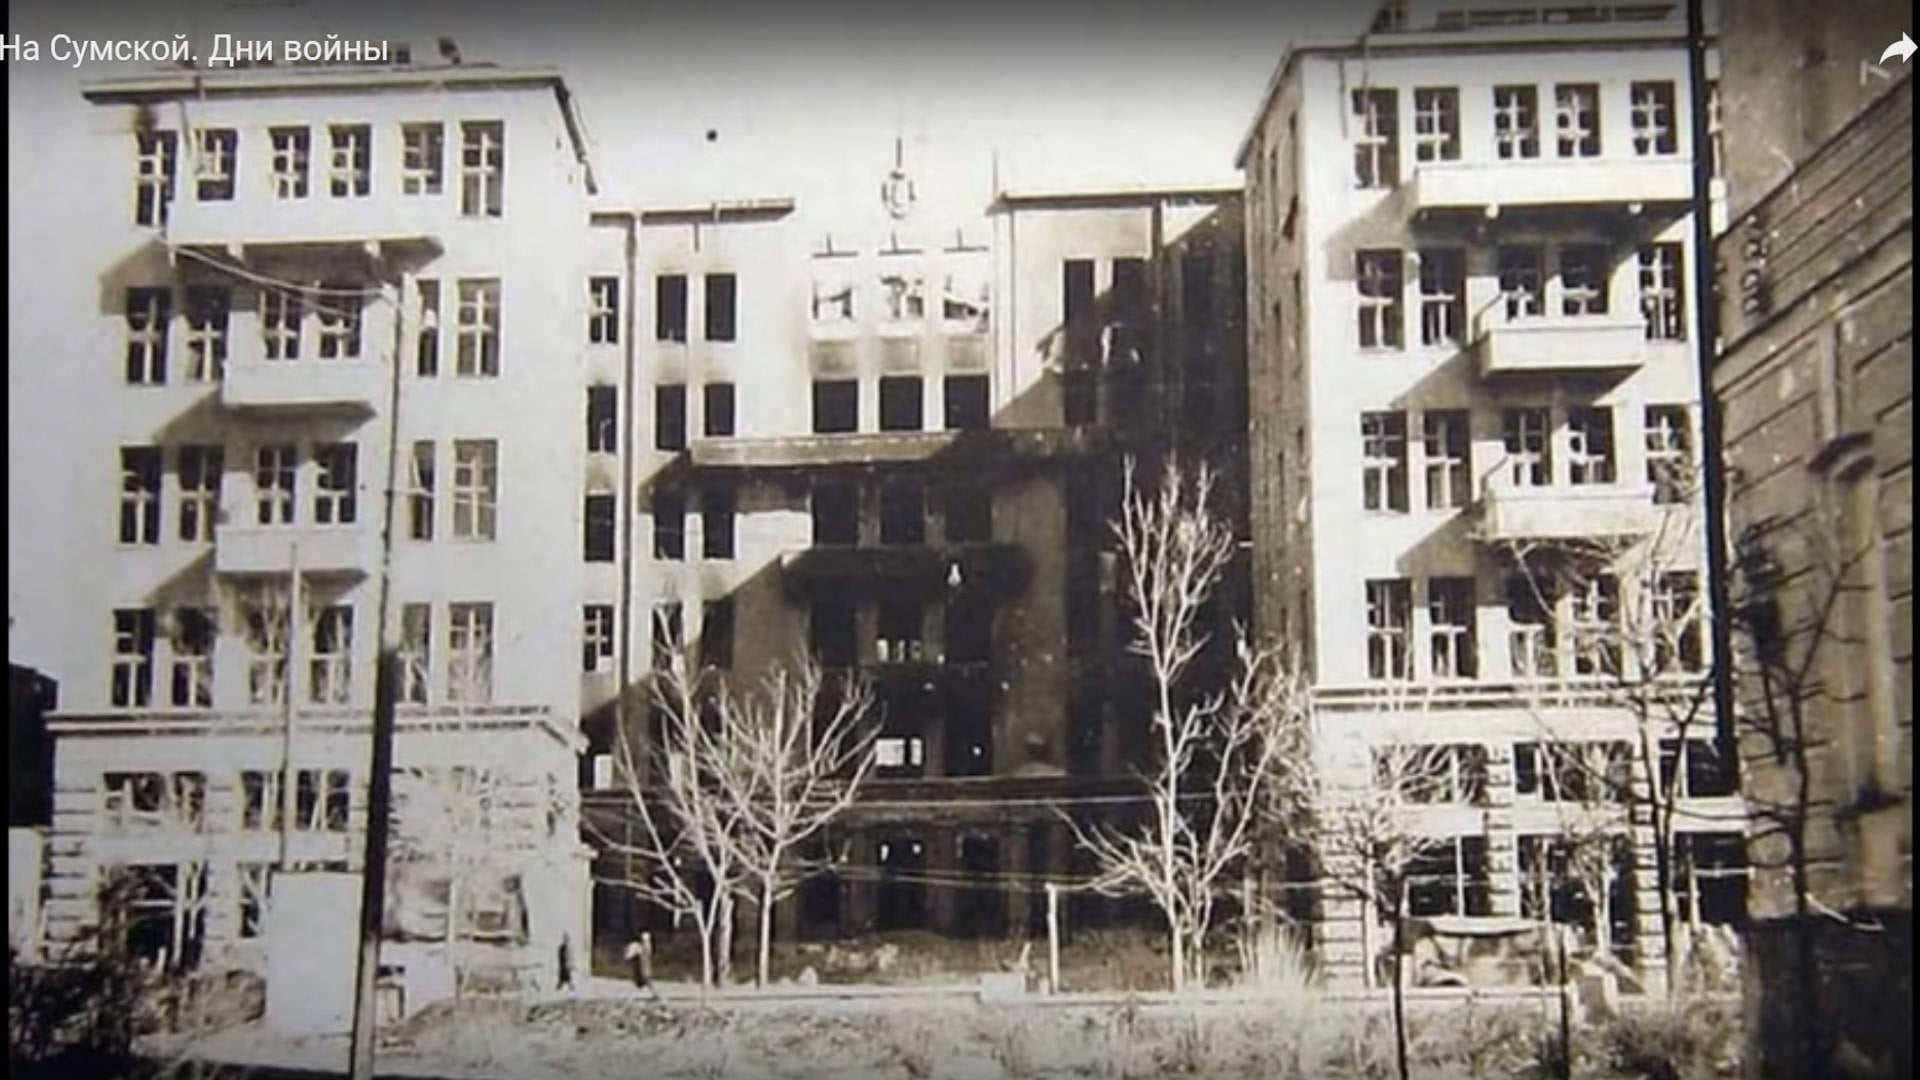 Здание во время Второй мировой войны. Фото: Facebook/ХНУСА